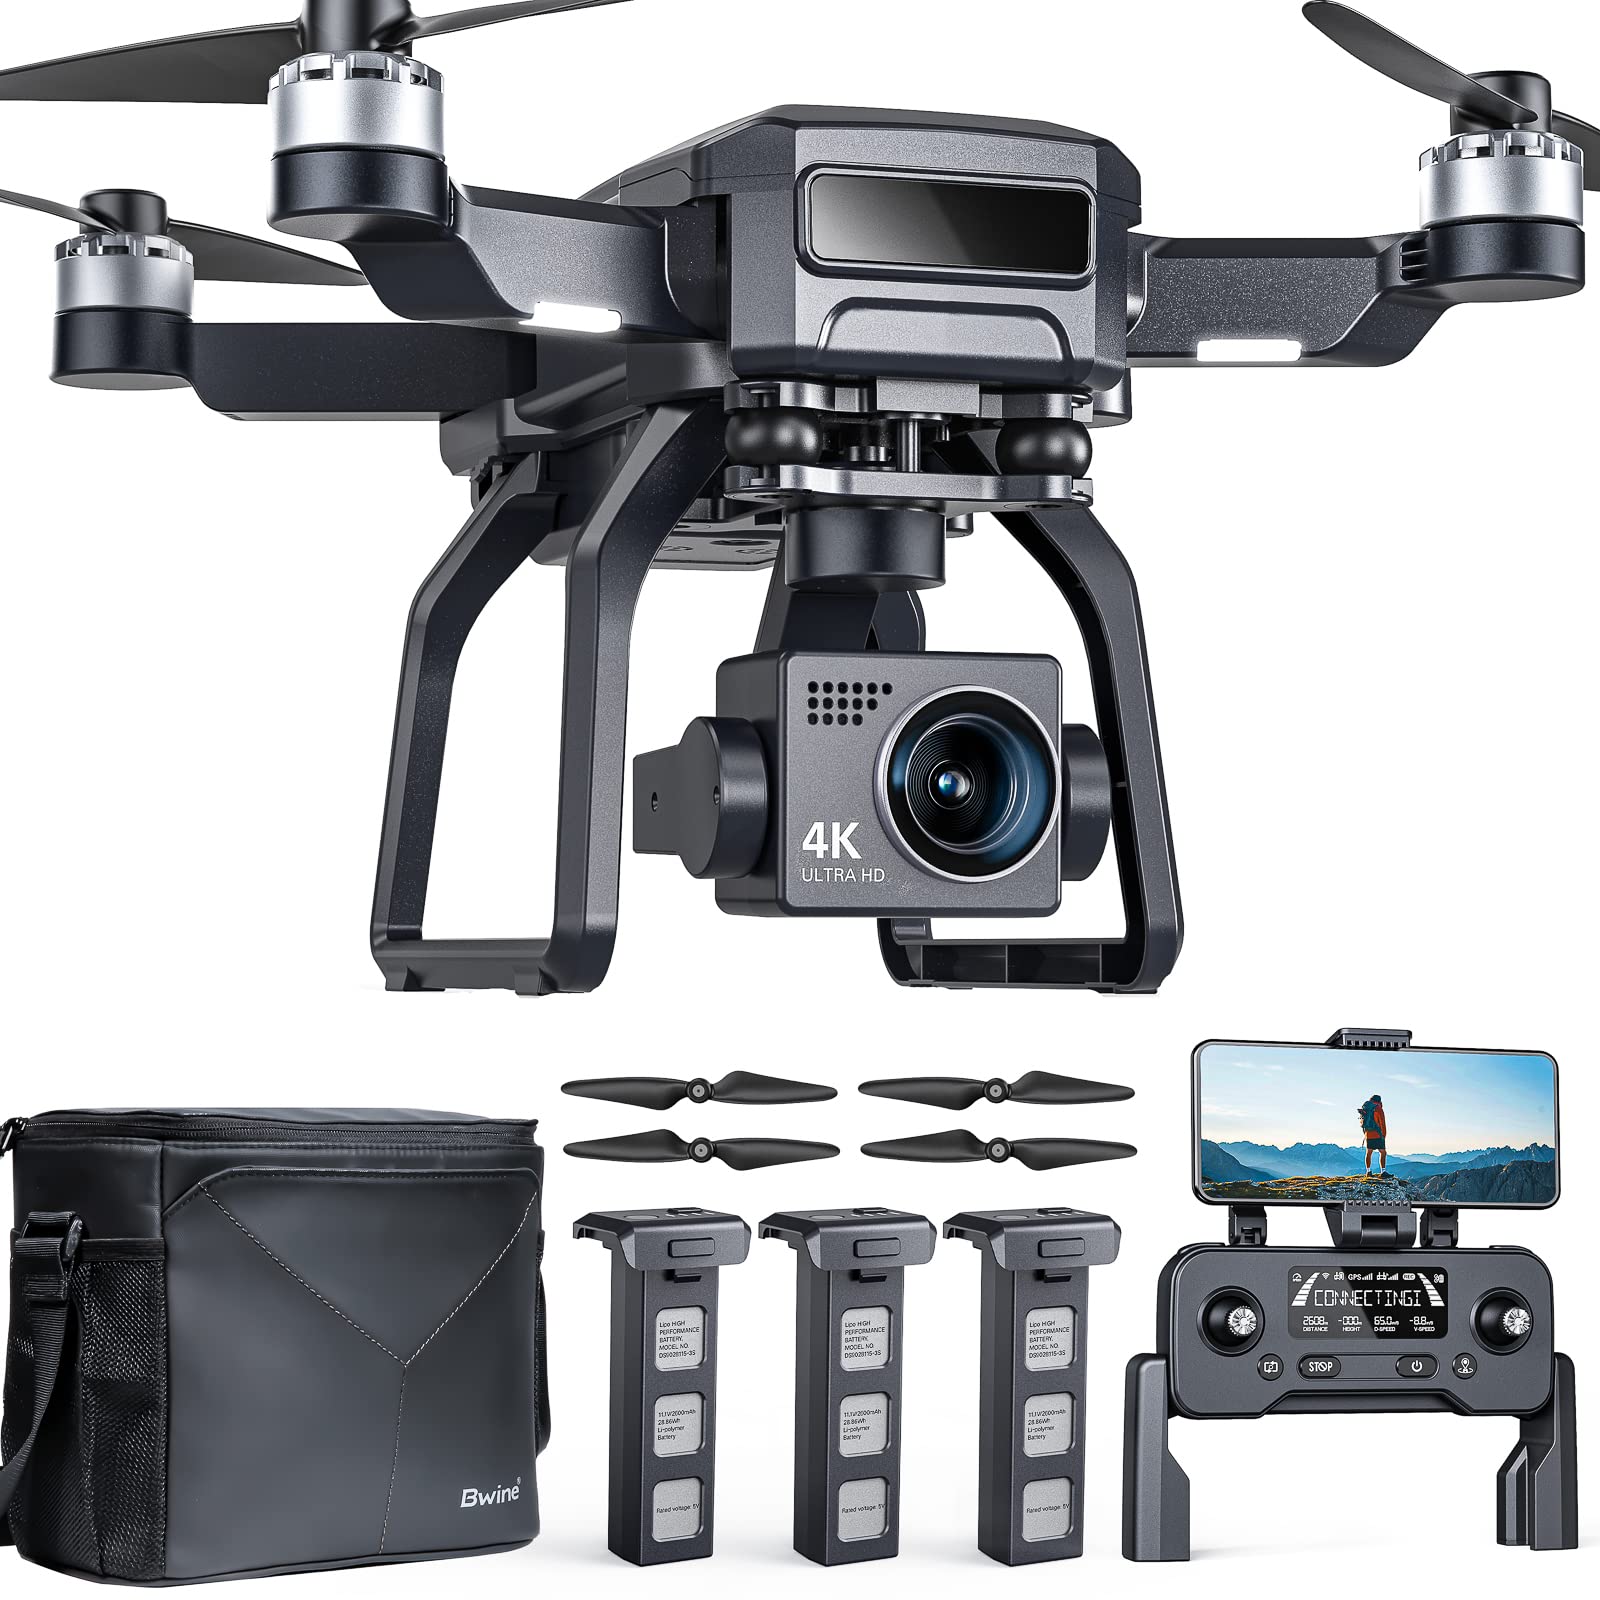  Bwine F7 GPSカメラ付き大人向けFAA認証済みプロフェッショナルドローン 4Kナイトビジョン、3軸ジンバル、長距離2マイル、飛行時間75分、バッテリー3...